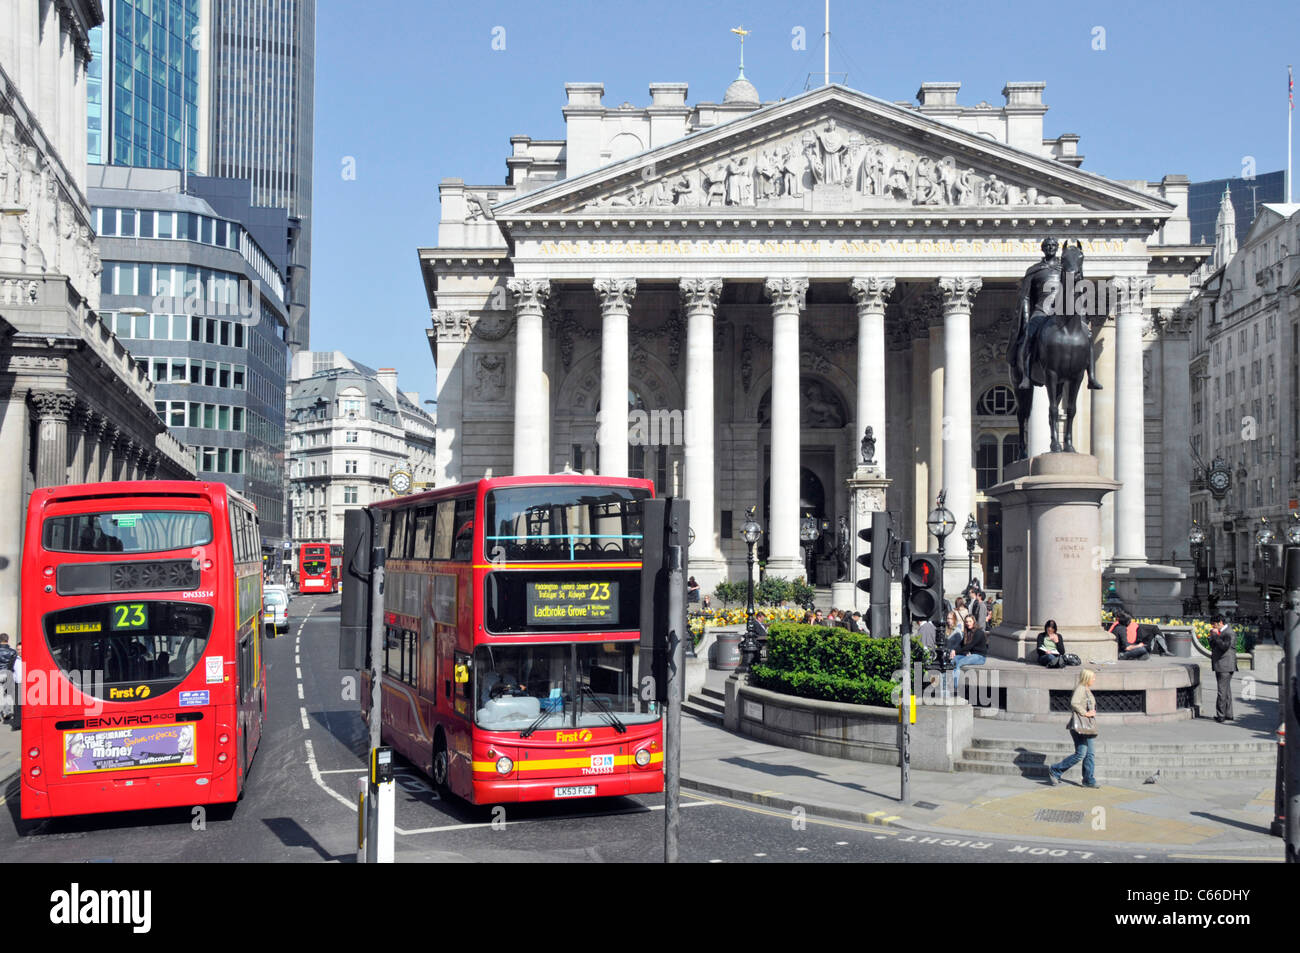 London bus des transports publics dans la région de Threadneedle Street dans le mille carré de ville de Londres avec le Royal Exchange building (centre) Scène de rue à Londres UK Banque D'Images